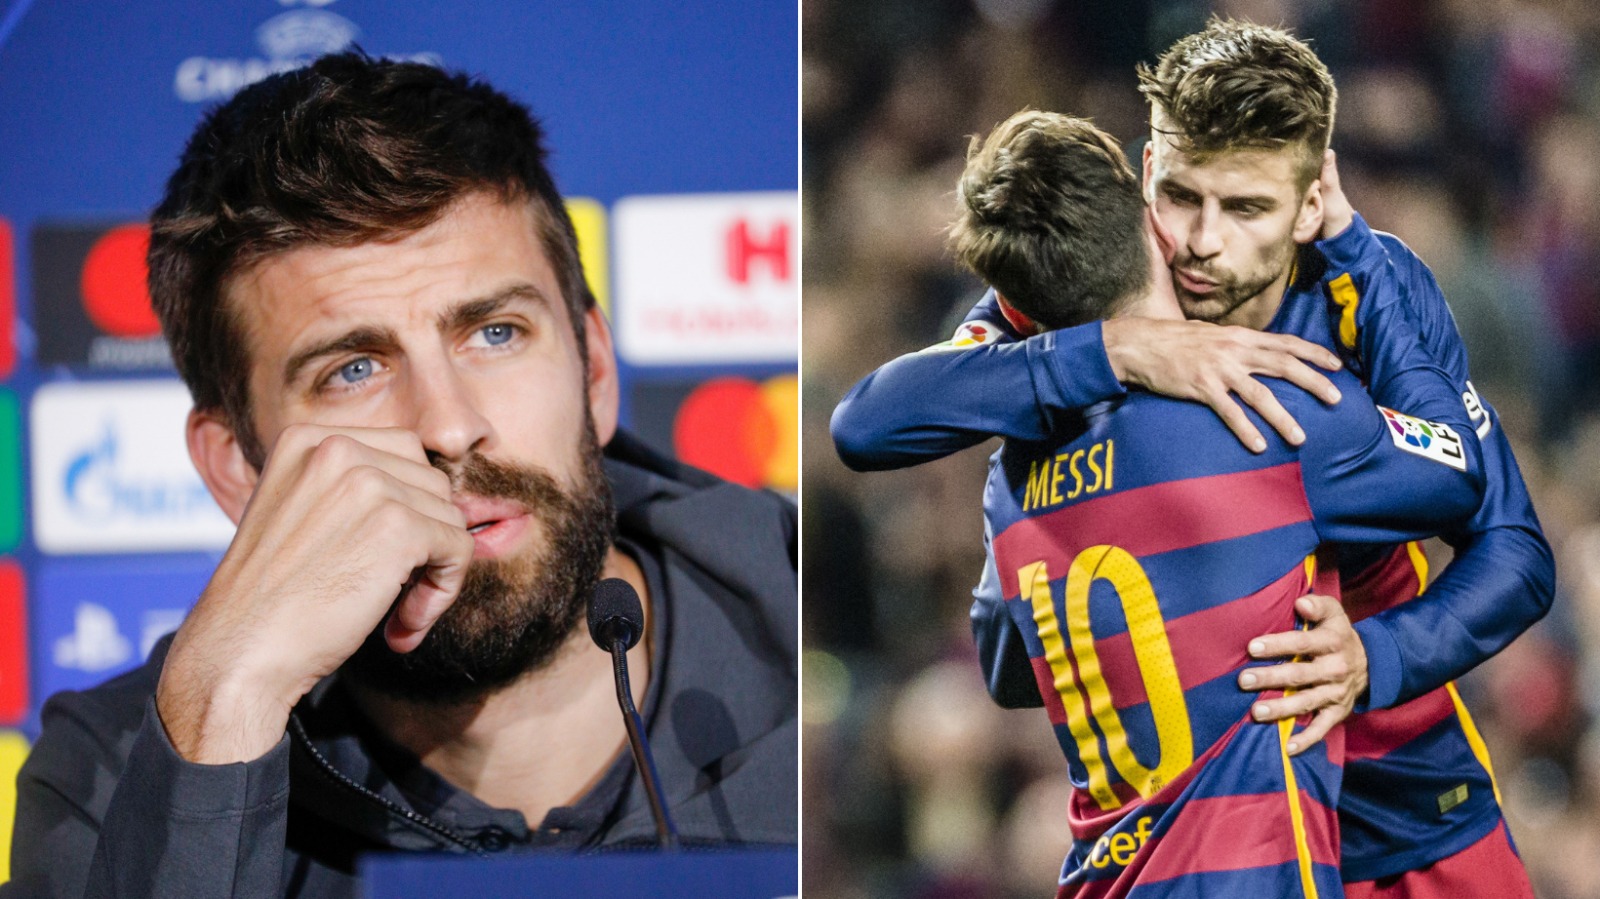 « Les choses forcées peuvent être négatives », Gerard Pique avertit le Barça pour le retour Messi